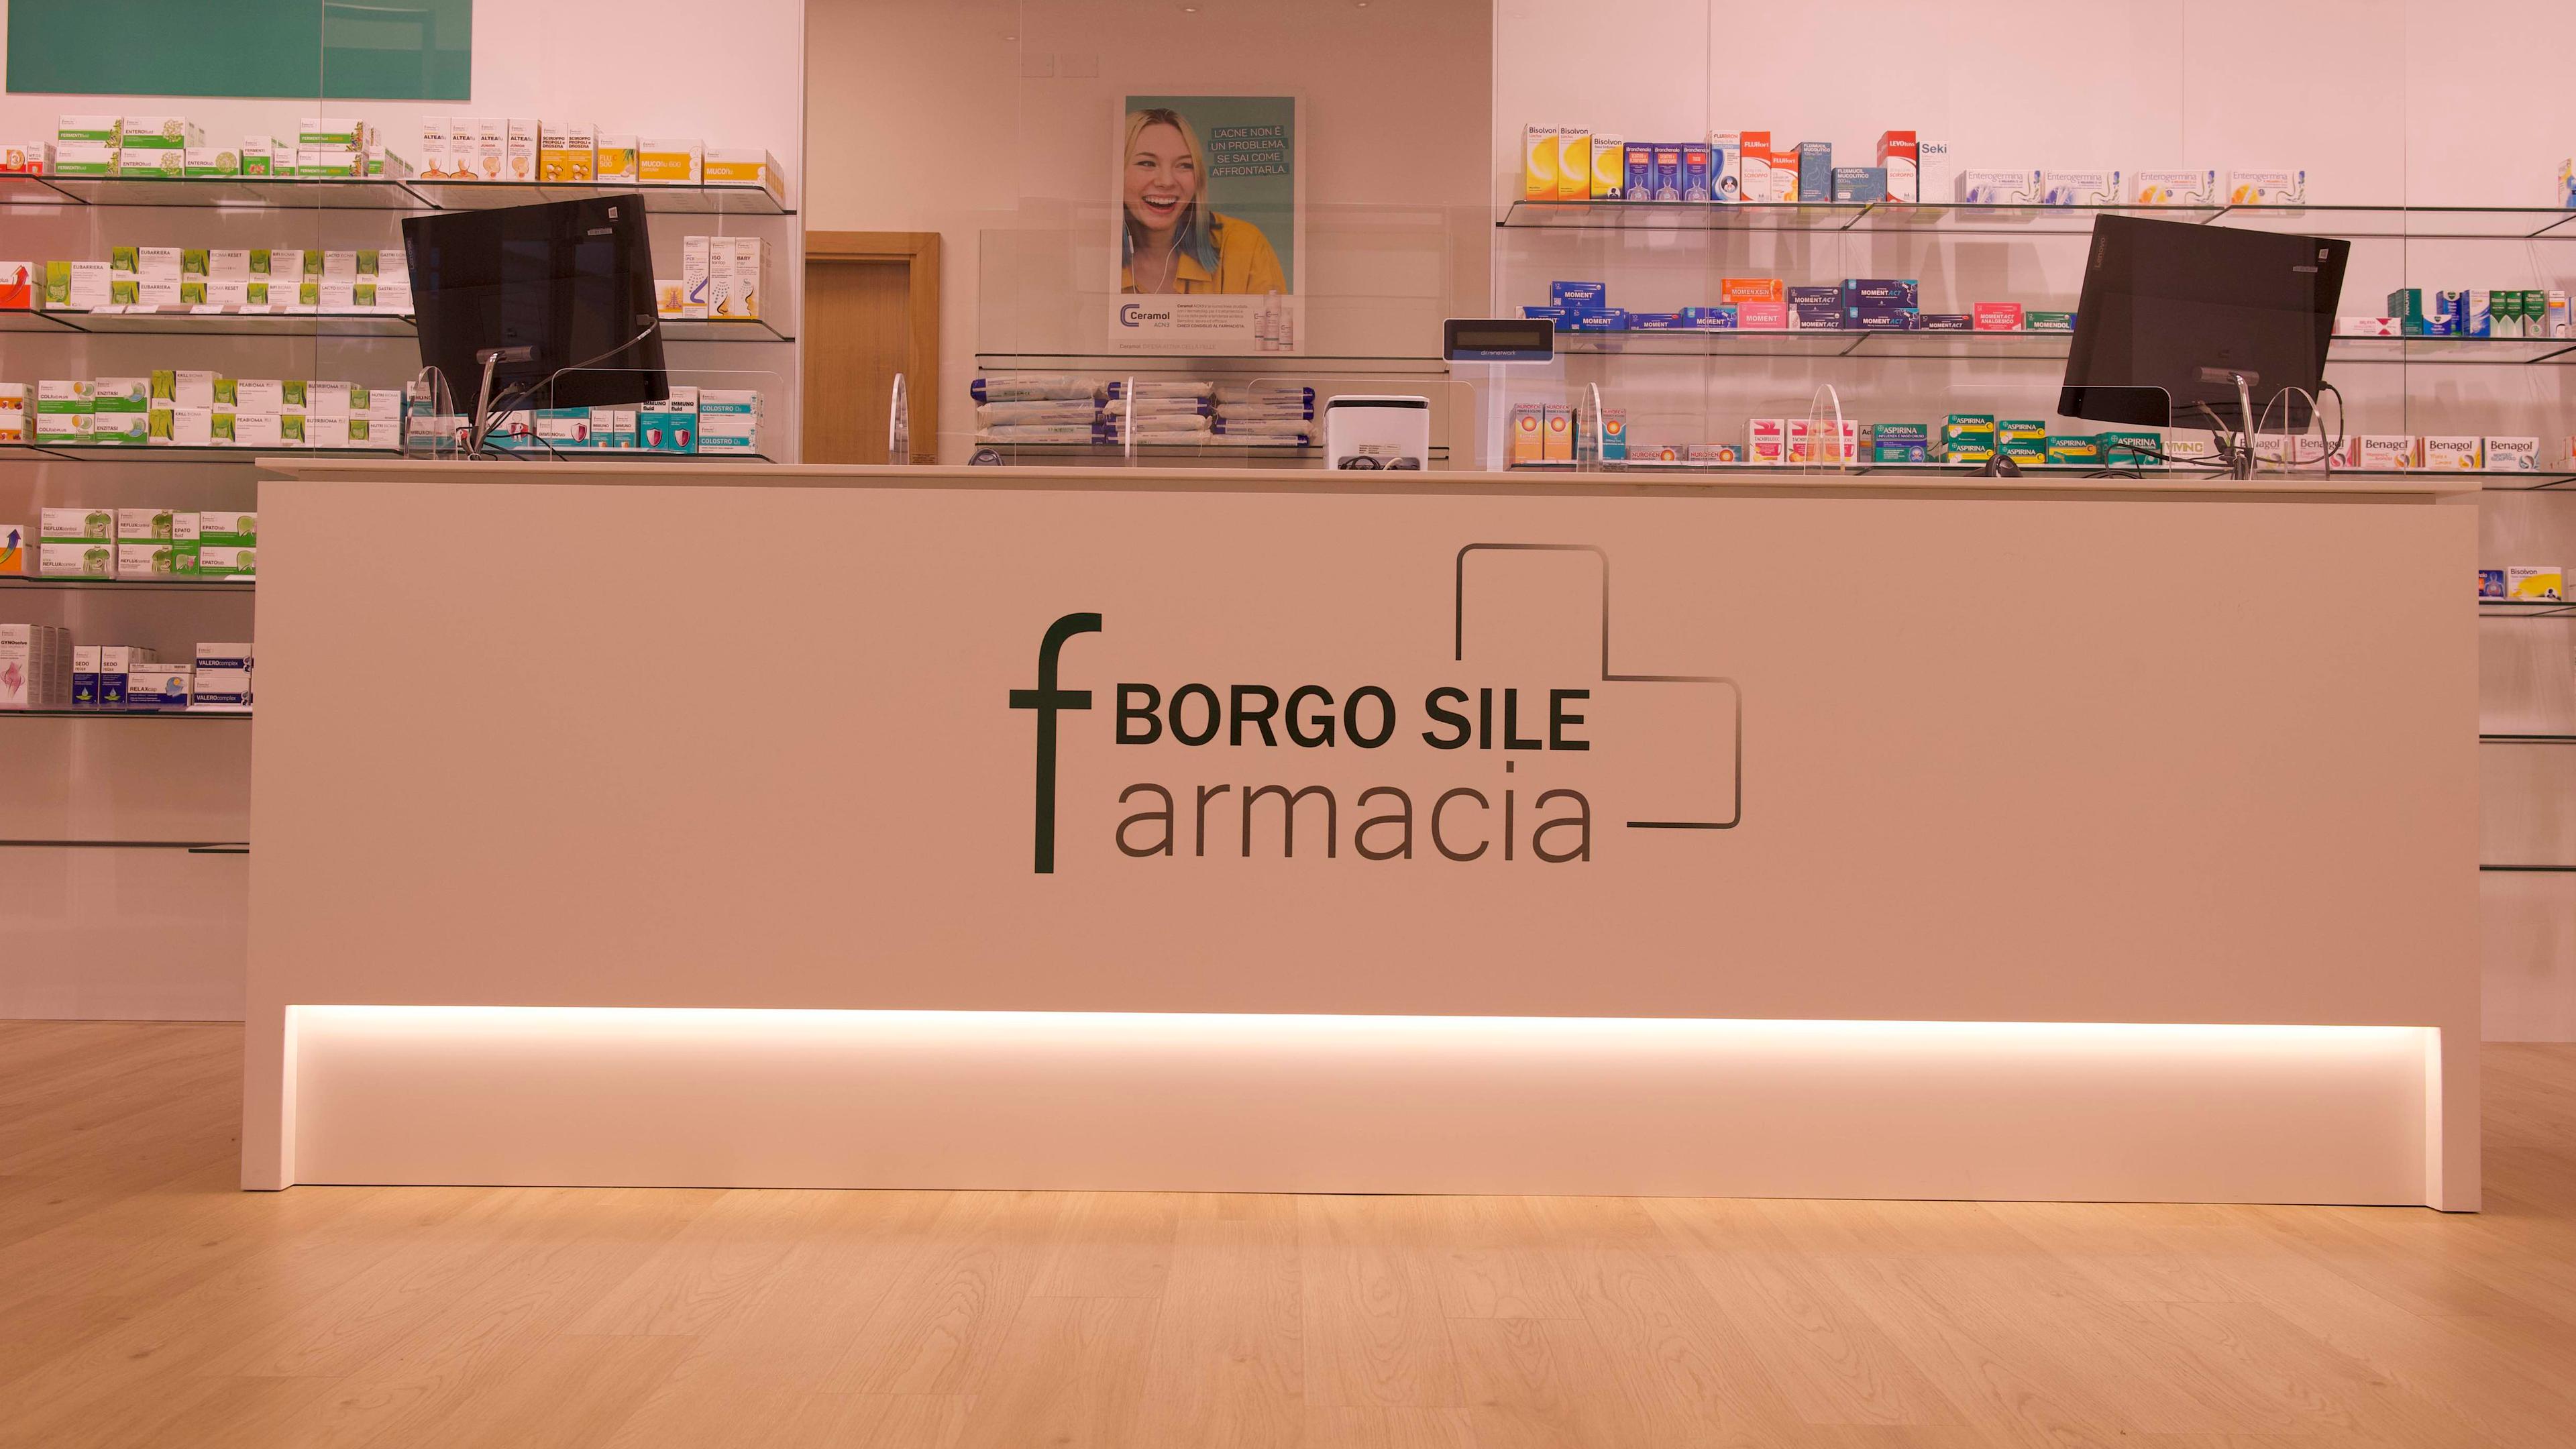 Farmacia Borgo Sile Gallery Linealightgroup 1920X1080